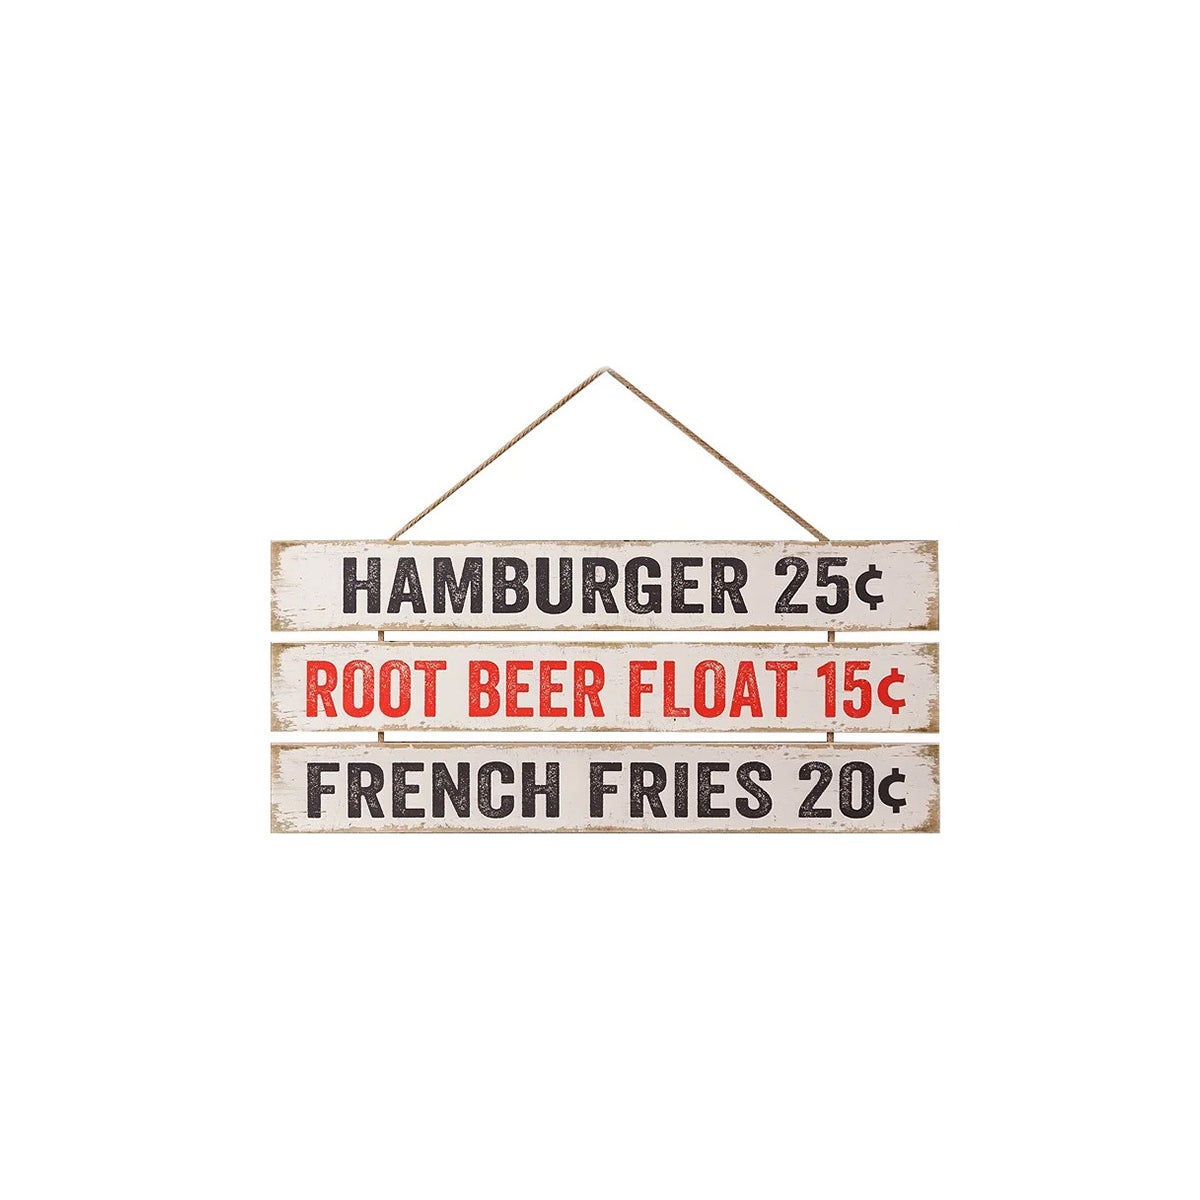 Hamburger/Float/Fries Hanging Wall Sign